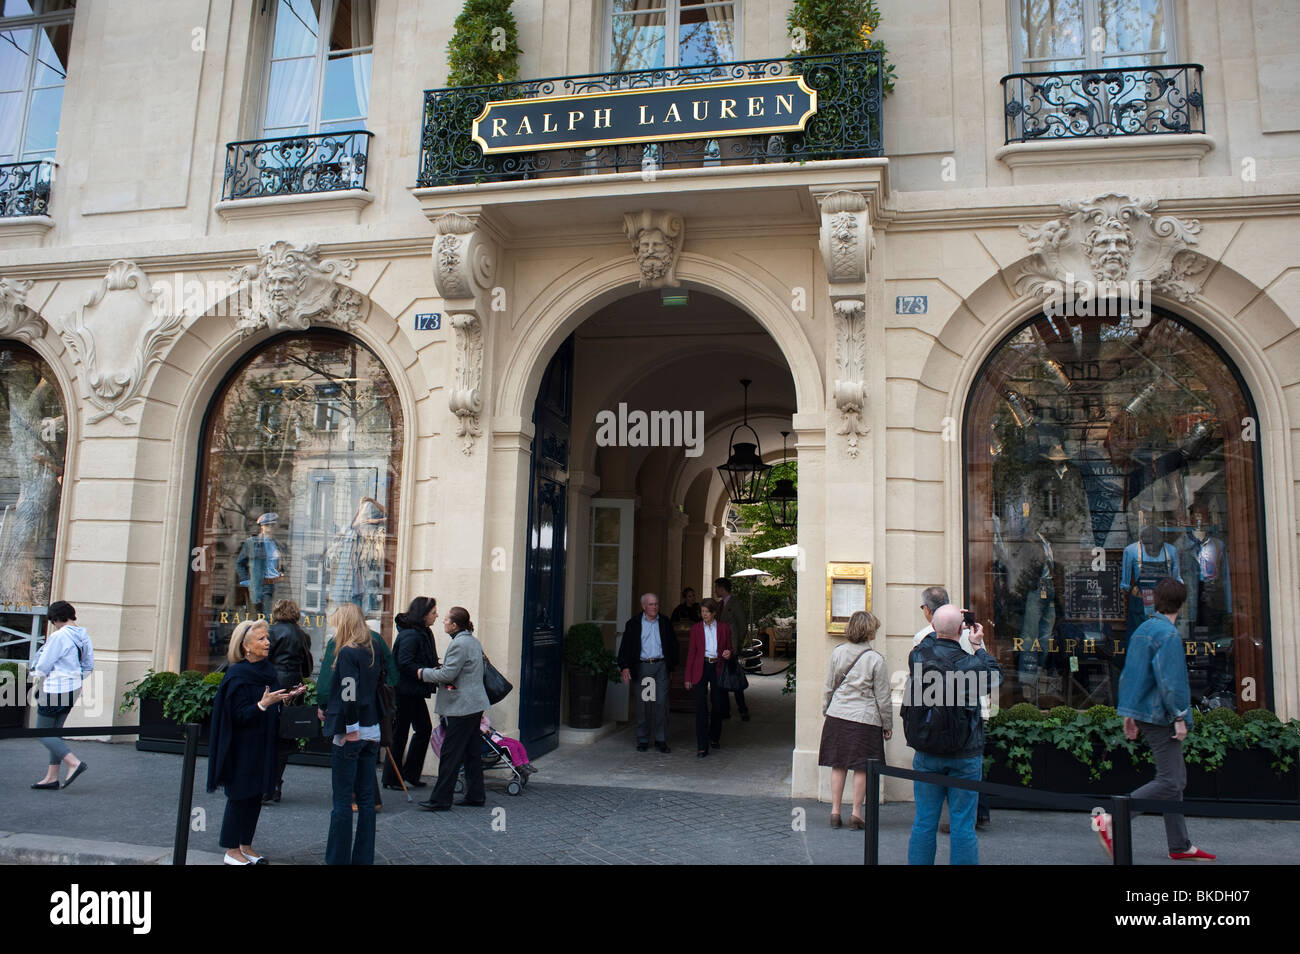 Paris, France, Outside Ralph Lauren, Fashion Brands, International  Shopping, in "Saint Germain des Prés District" Parisian street scene  people, mode labels Stock Photo - Alamy